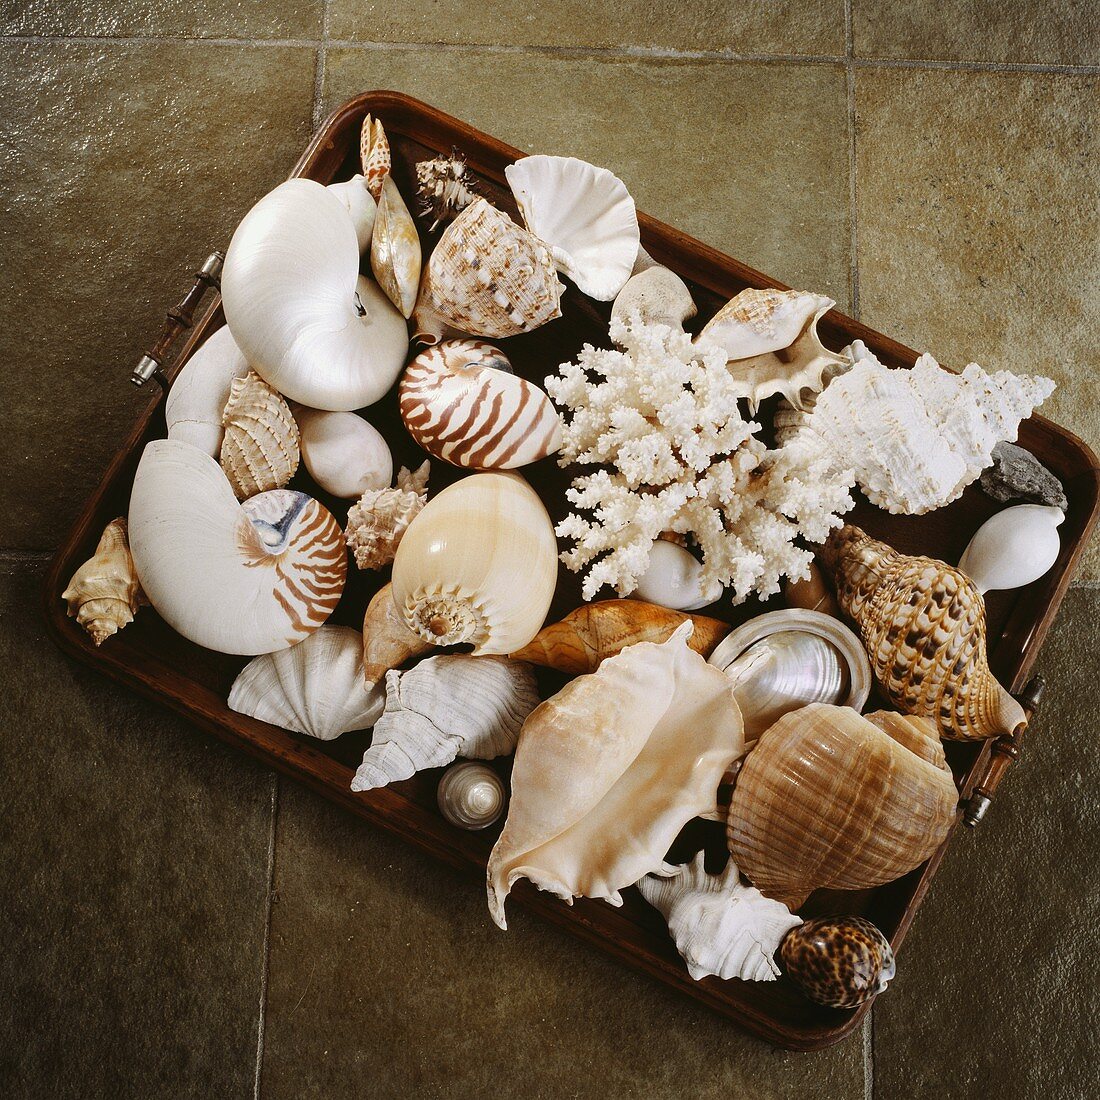 Holztablett mit exotischer Muschel-Sammlung auf hellbraunen Bodenfliesen